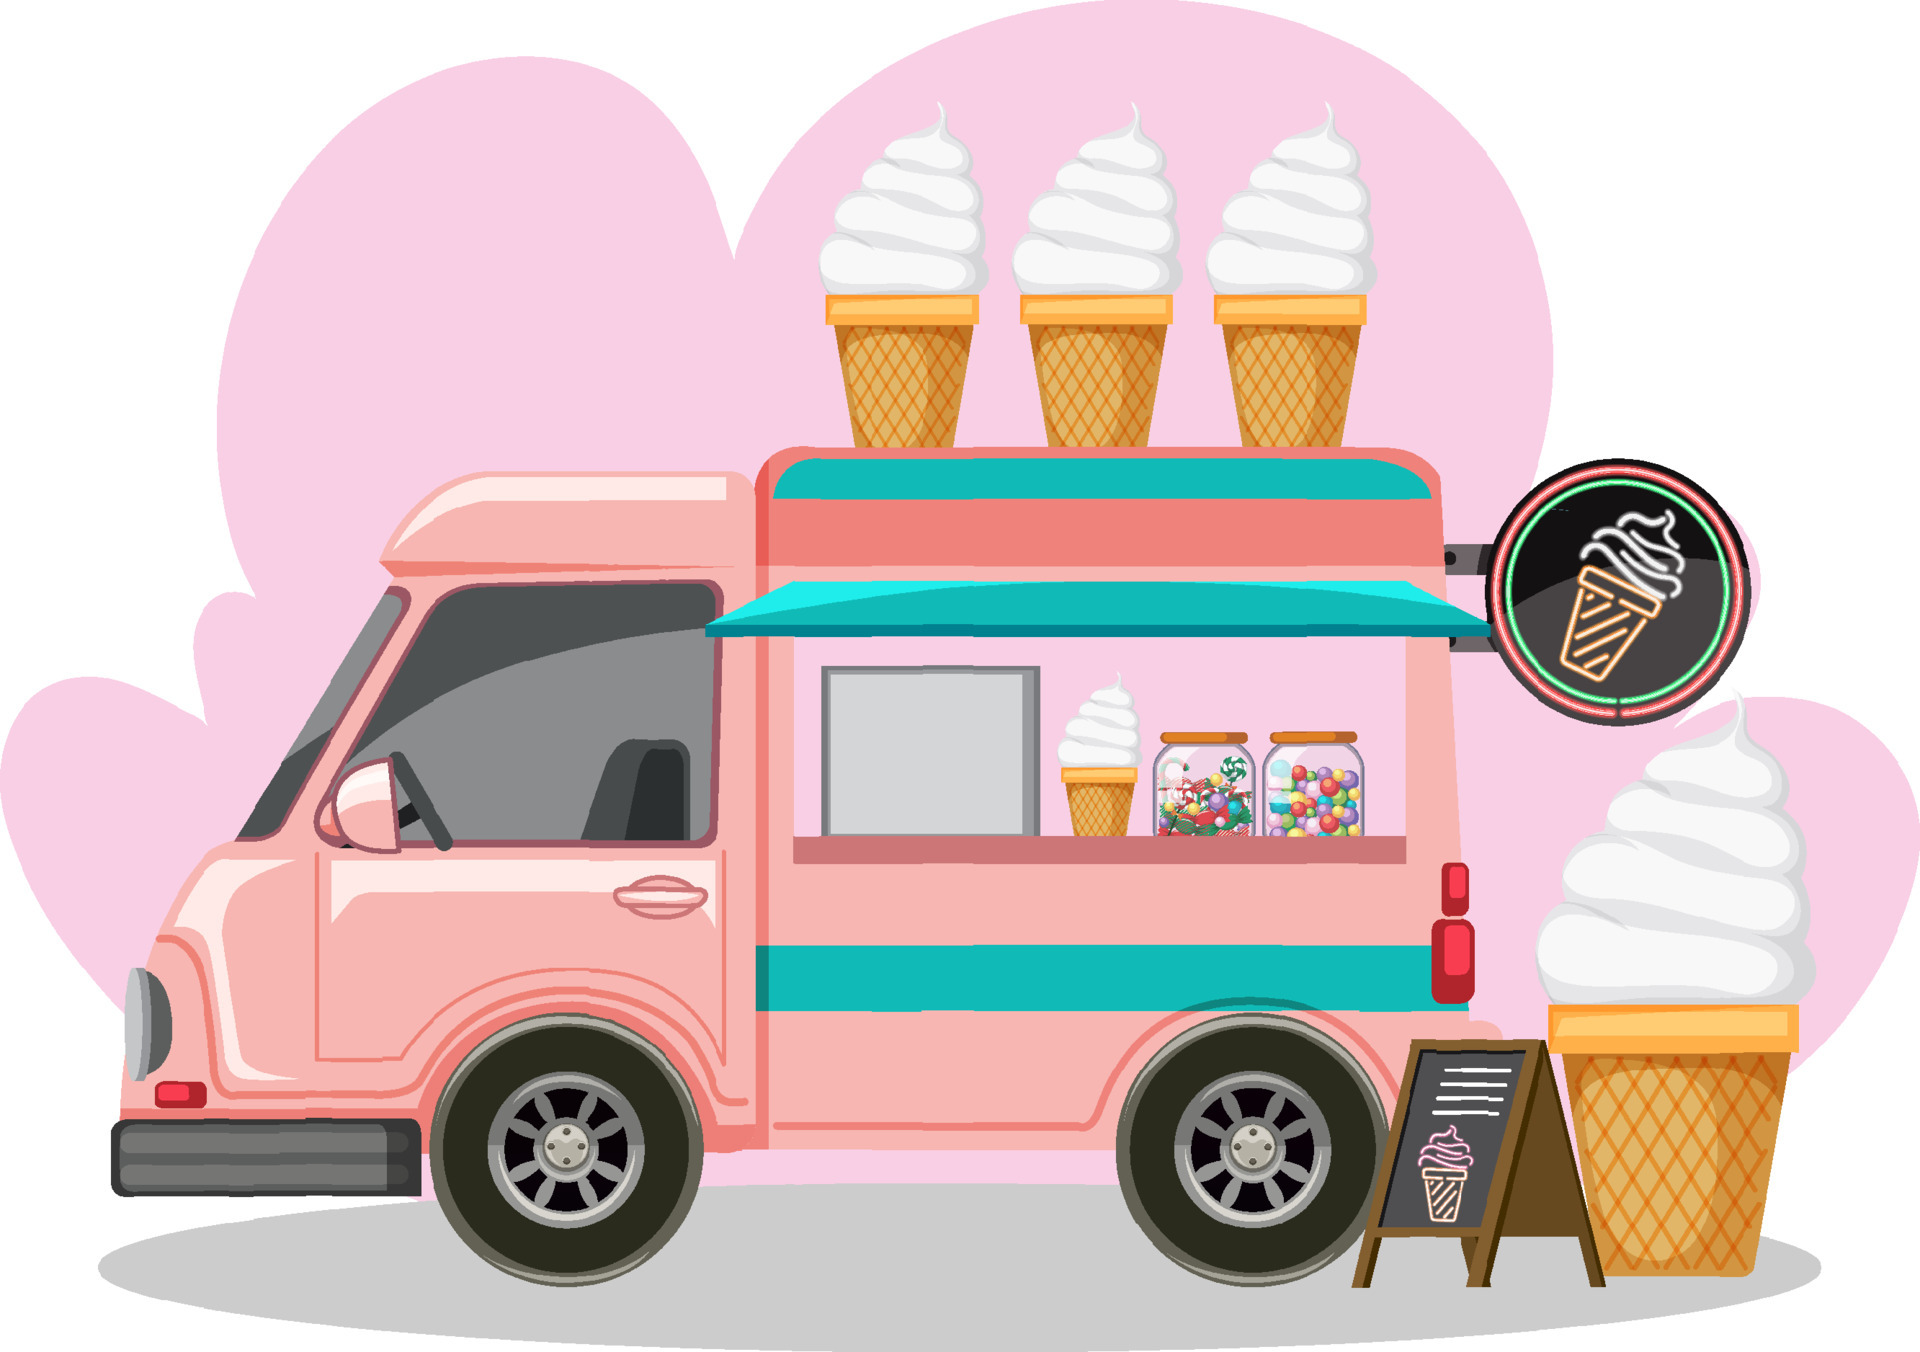 Camion de helados